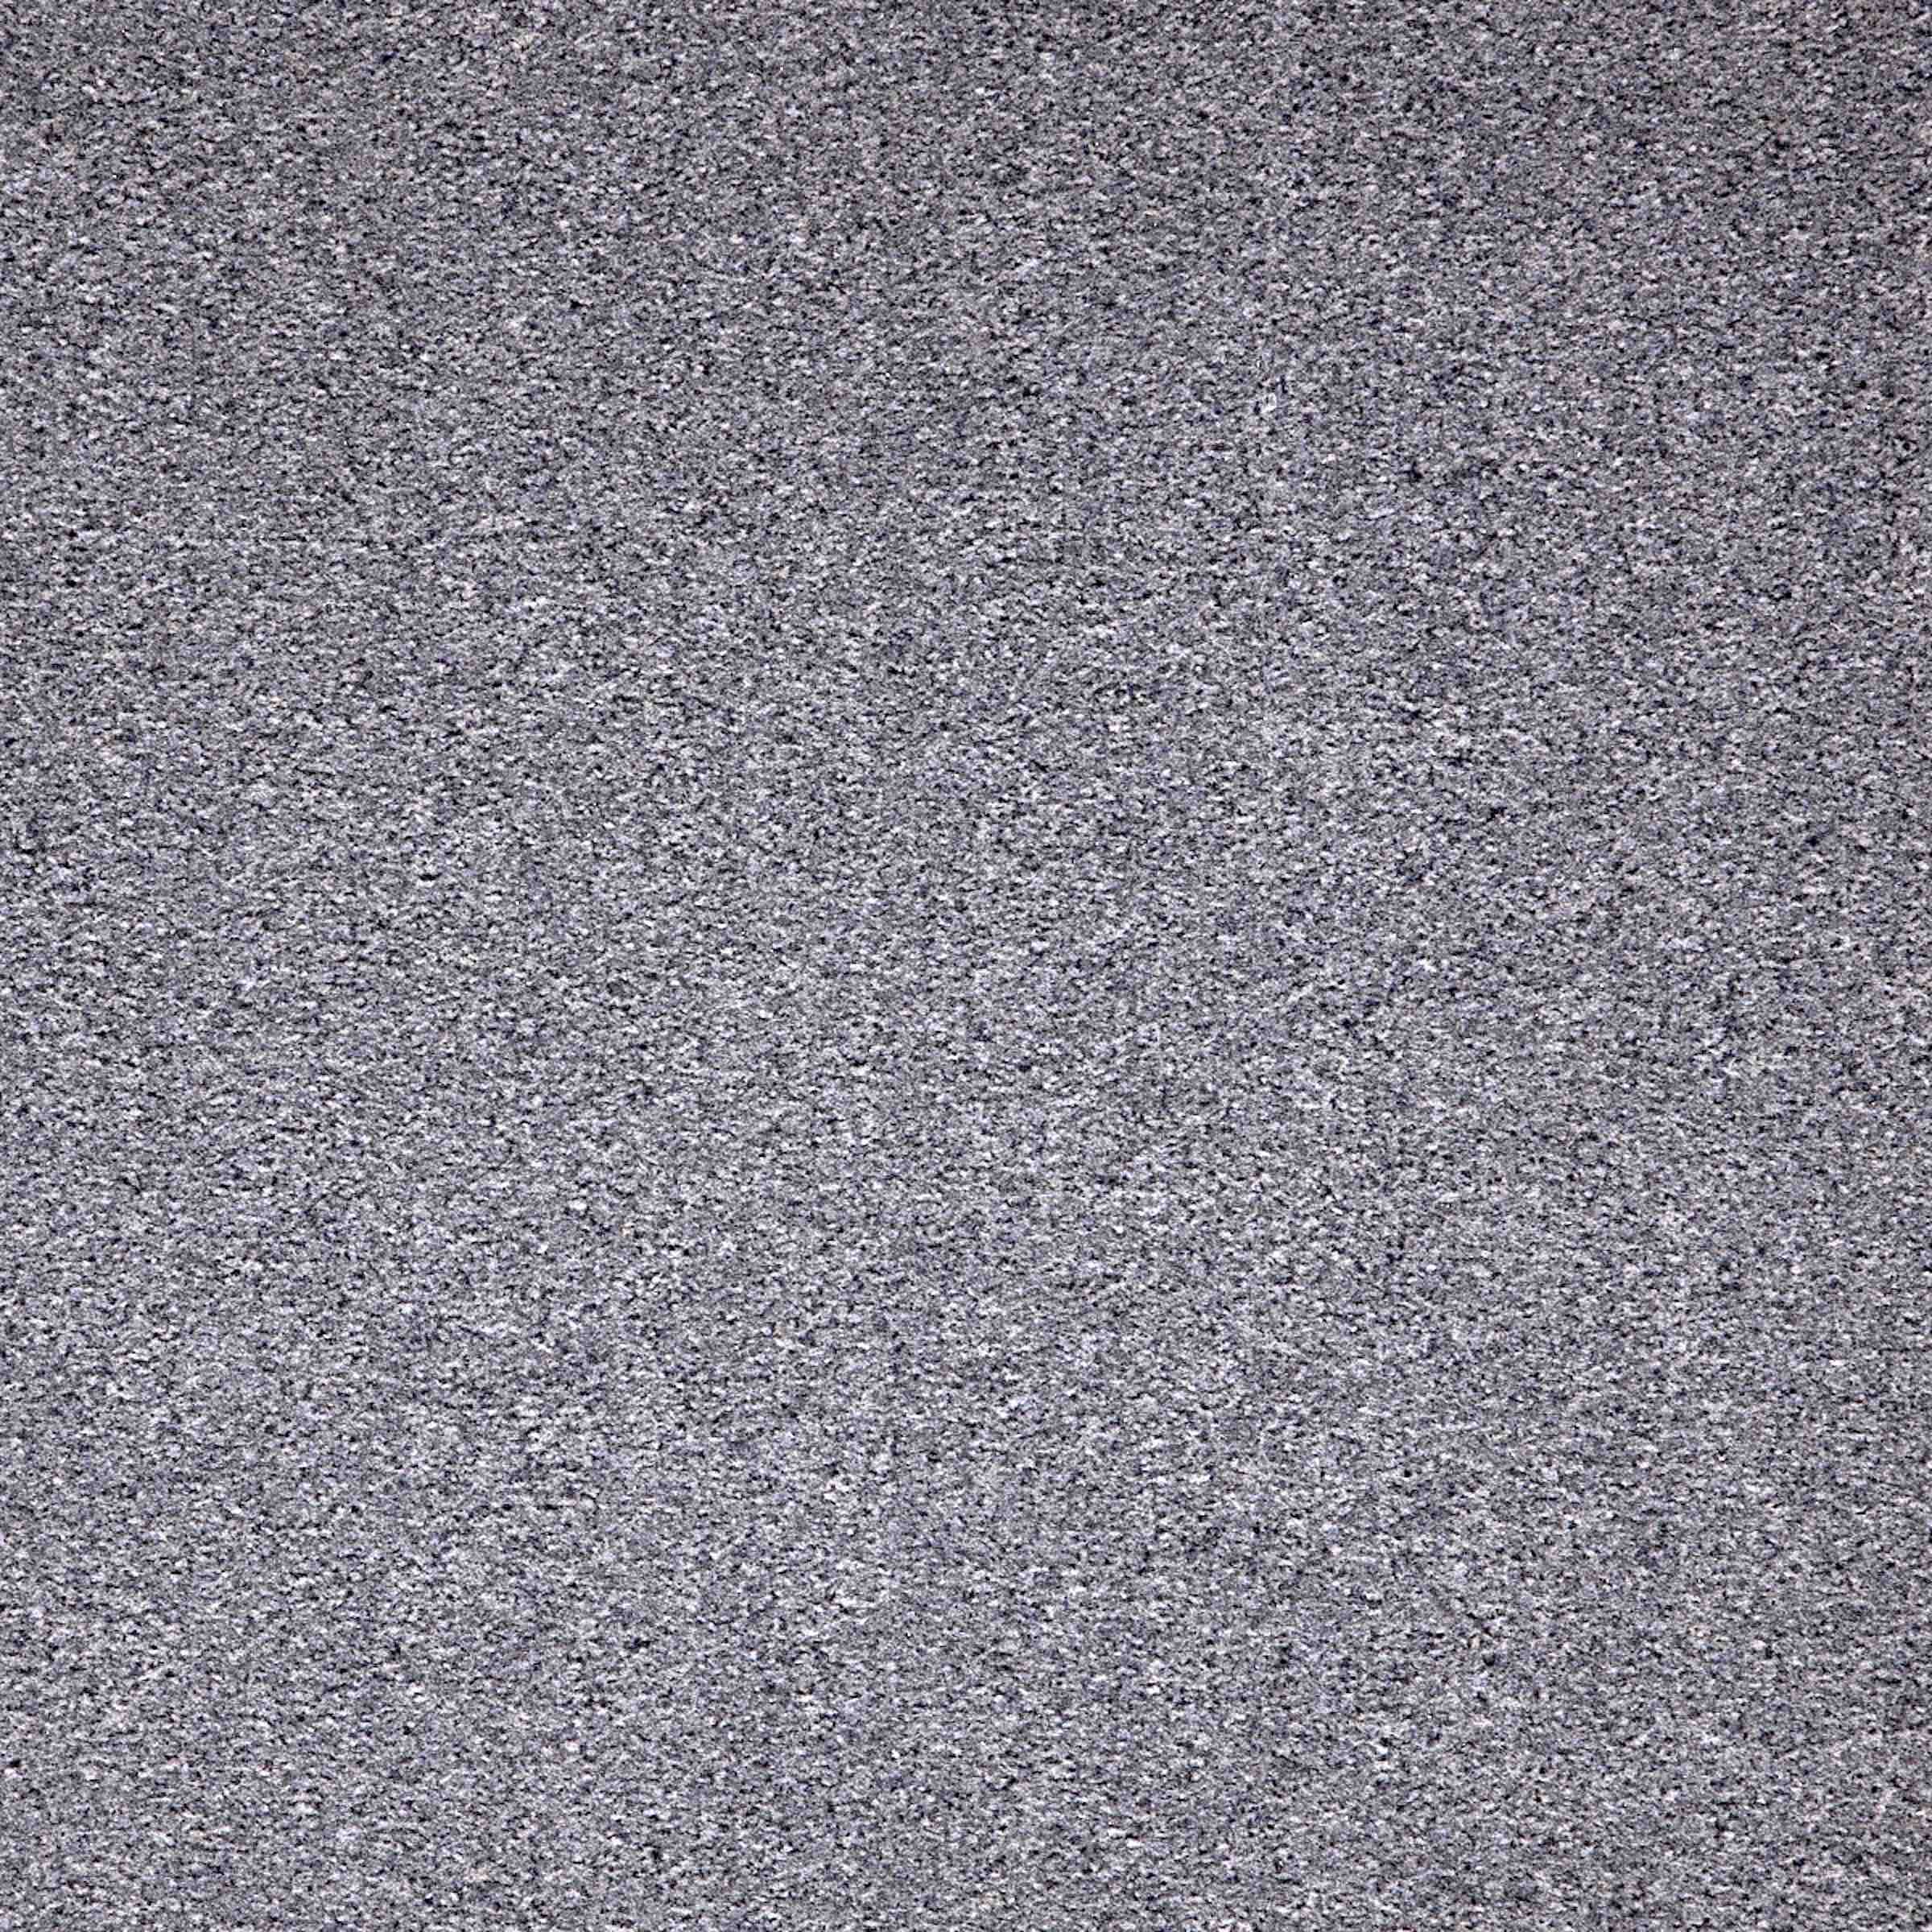 Paragon Workspace Cut Pile Carpet Tiles